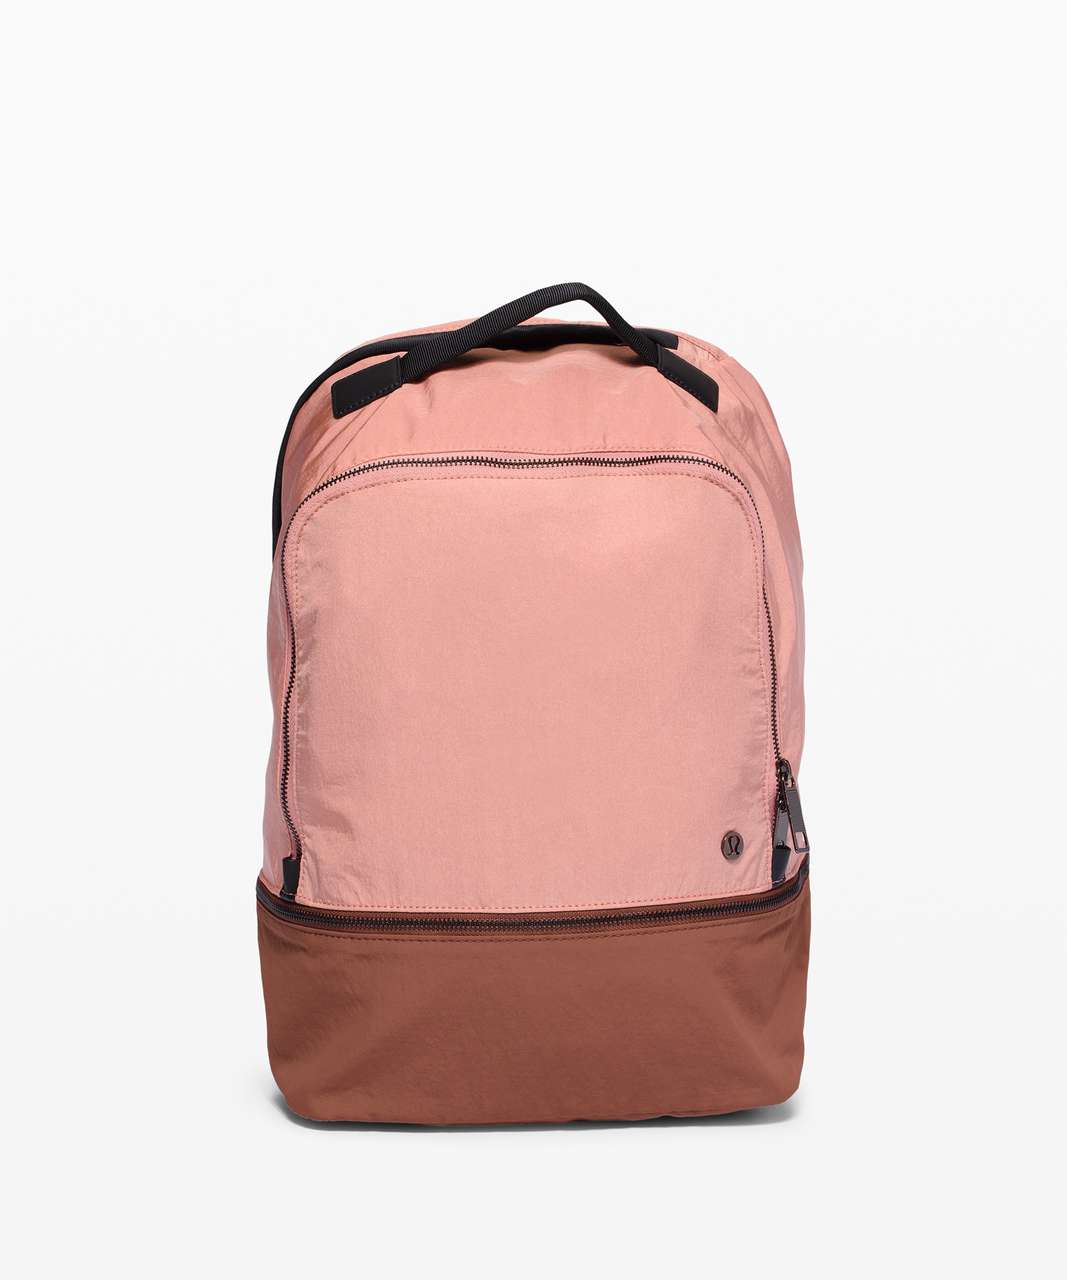 Lululemon City Adventurer Backpack *17L - Pink Pastel / Ancient Copper